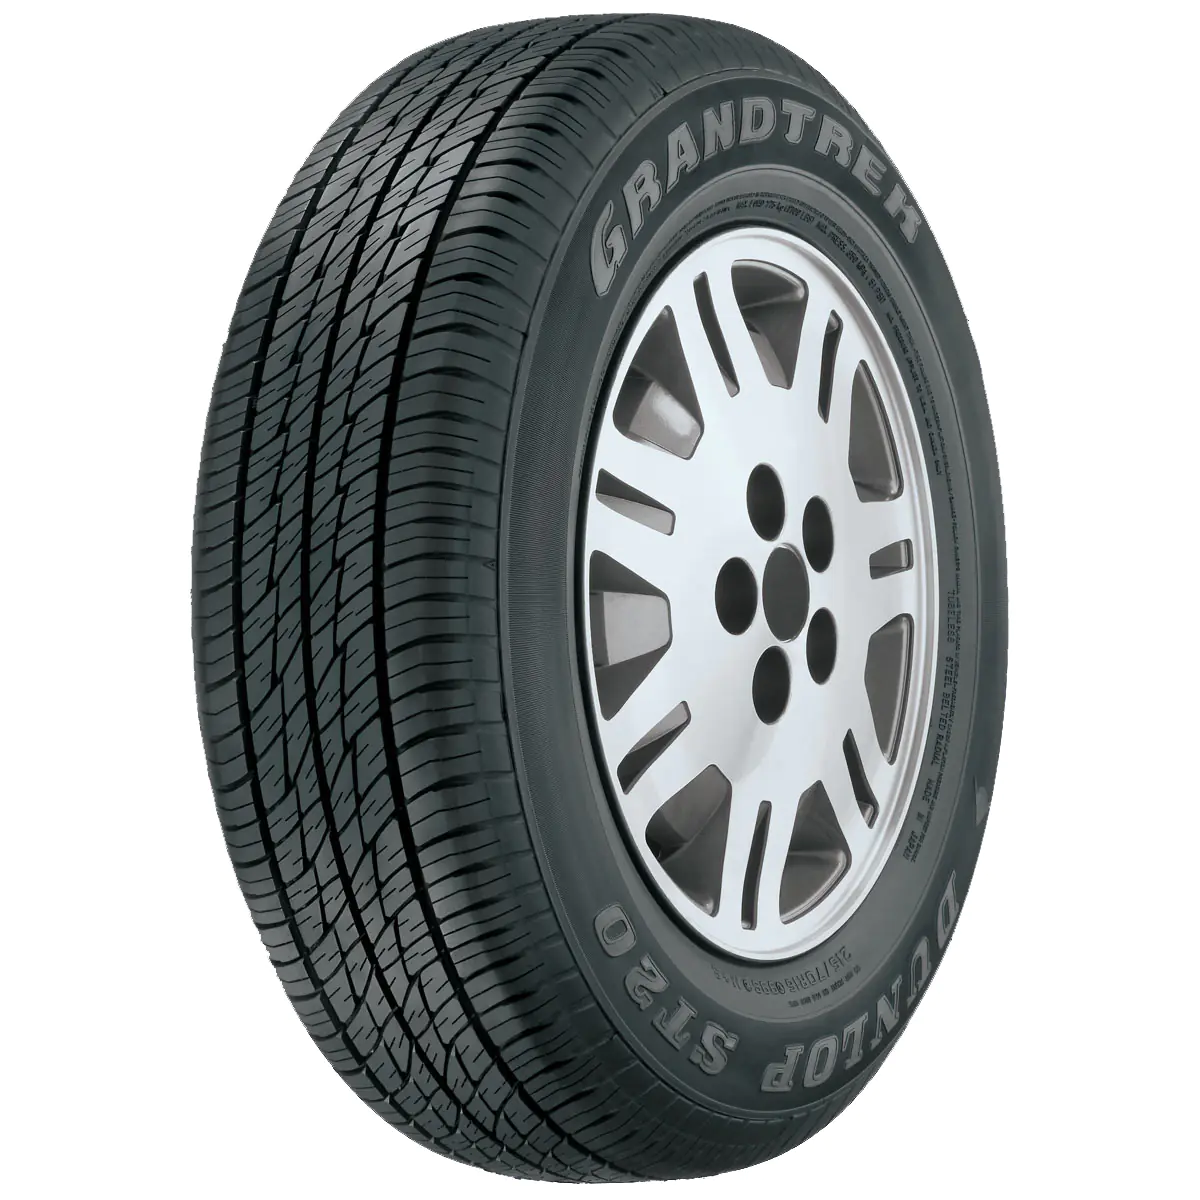 Dunlop Dunlop 215/60 R17 96H GRANDTREK ST20 pneumatici nuovi Estivo 